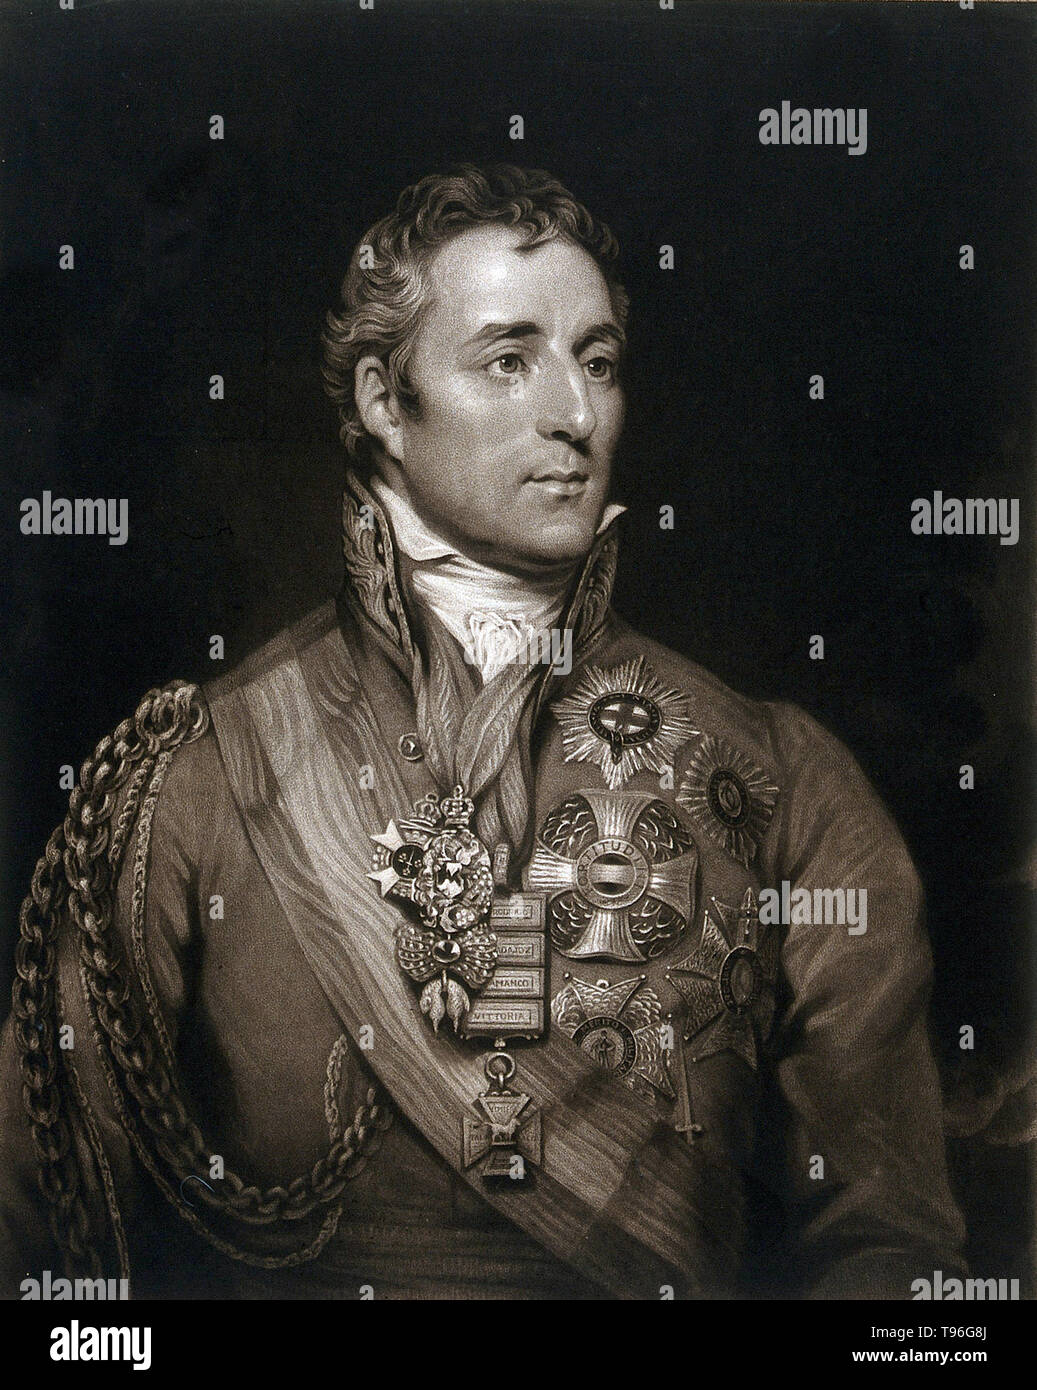 Arthur Wellesley, primo duca di Wellington (1 maggio 1769 - 14 settembre 1852), era un soldato anglo-irlandese e più. Wellesley salito alla ribalta come un generale durante la campagna peninsulare delle guerre napoleoniche e fu promosso al rango di maresciallo di campo dopo che conduce le forze alleate alla vittoria contro l'impero francese nella battaglia di Vitoria nel 1813. A seguito di Napoleone in esilio nel 1814, ha servito come ambasciatore di Francia e fu concesso un ducato. Foto Stock